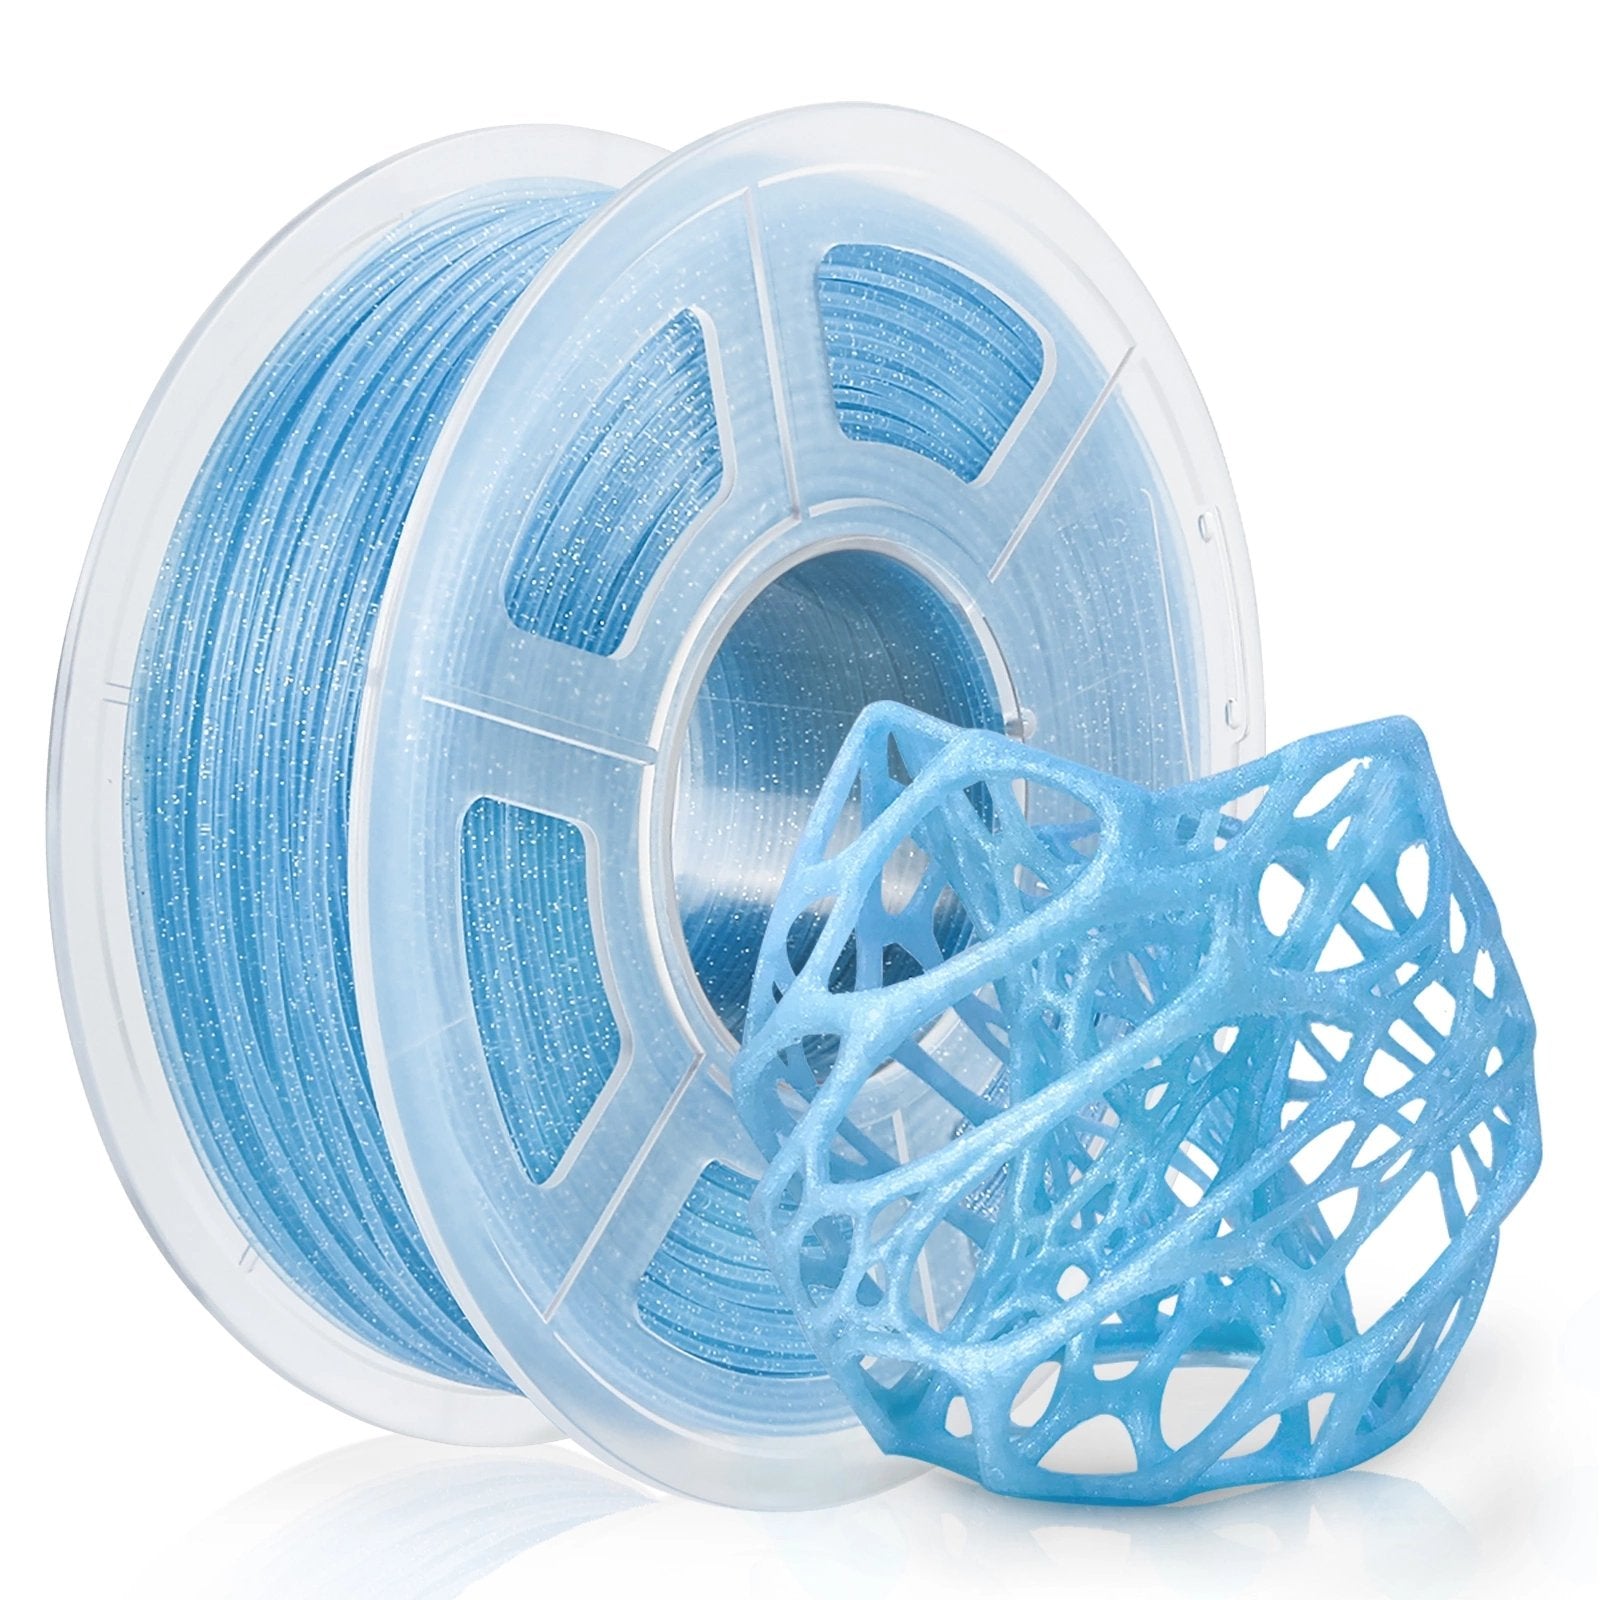 3D Printer Enclosure, Constant 3D Printing Temperature for 3D Printer  Filament, 25.6¡Á21.6¡Á29.5 inches